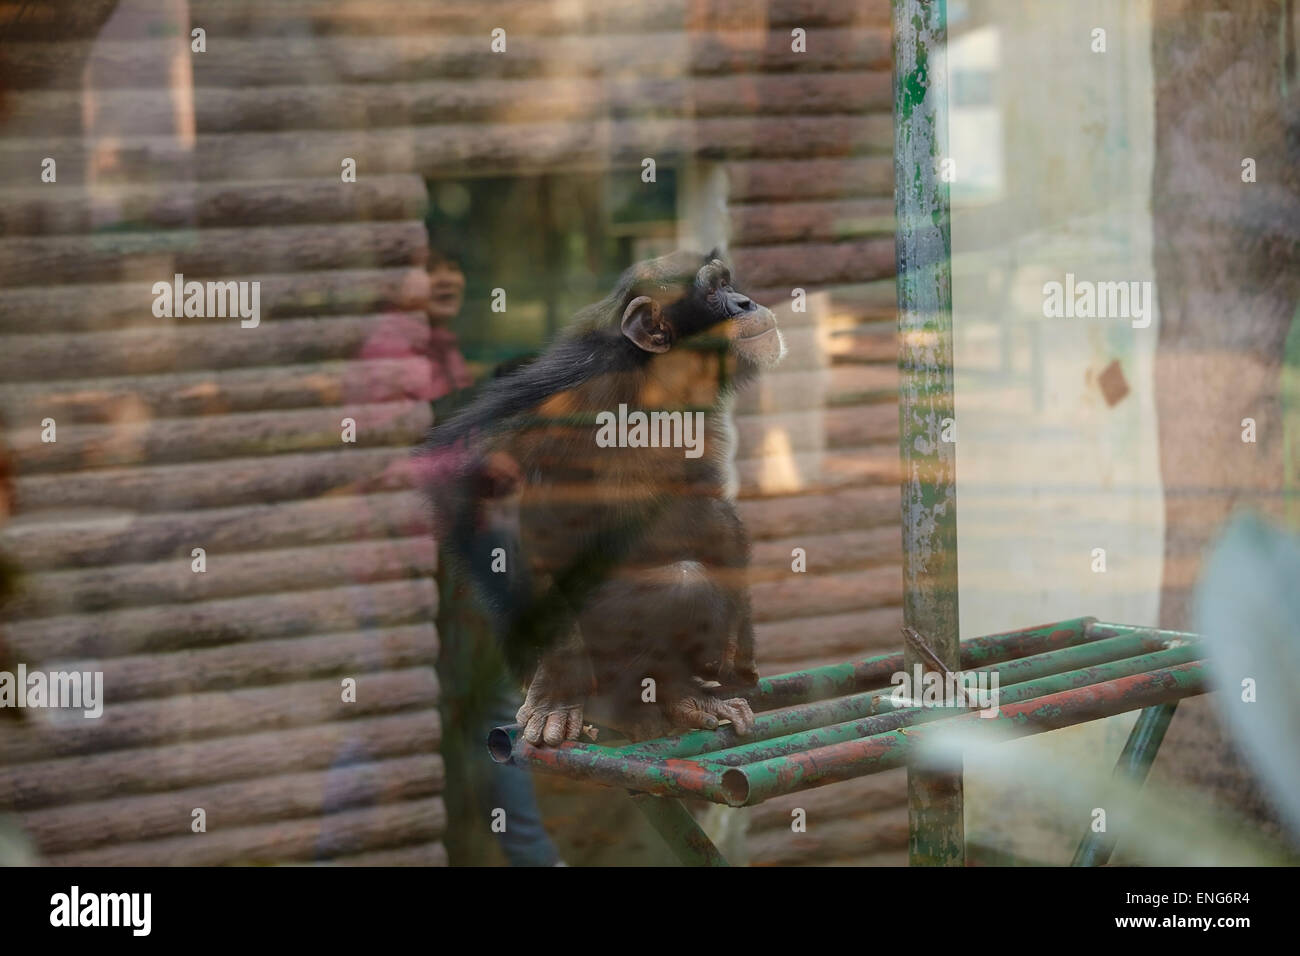 Un chimpanzé vu à travers le verre, gardé dans un environnement pauvre, à Nanjing Zoo, Nanjing, province de Jiangsu, Chine. Banque D'Images